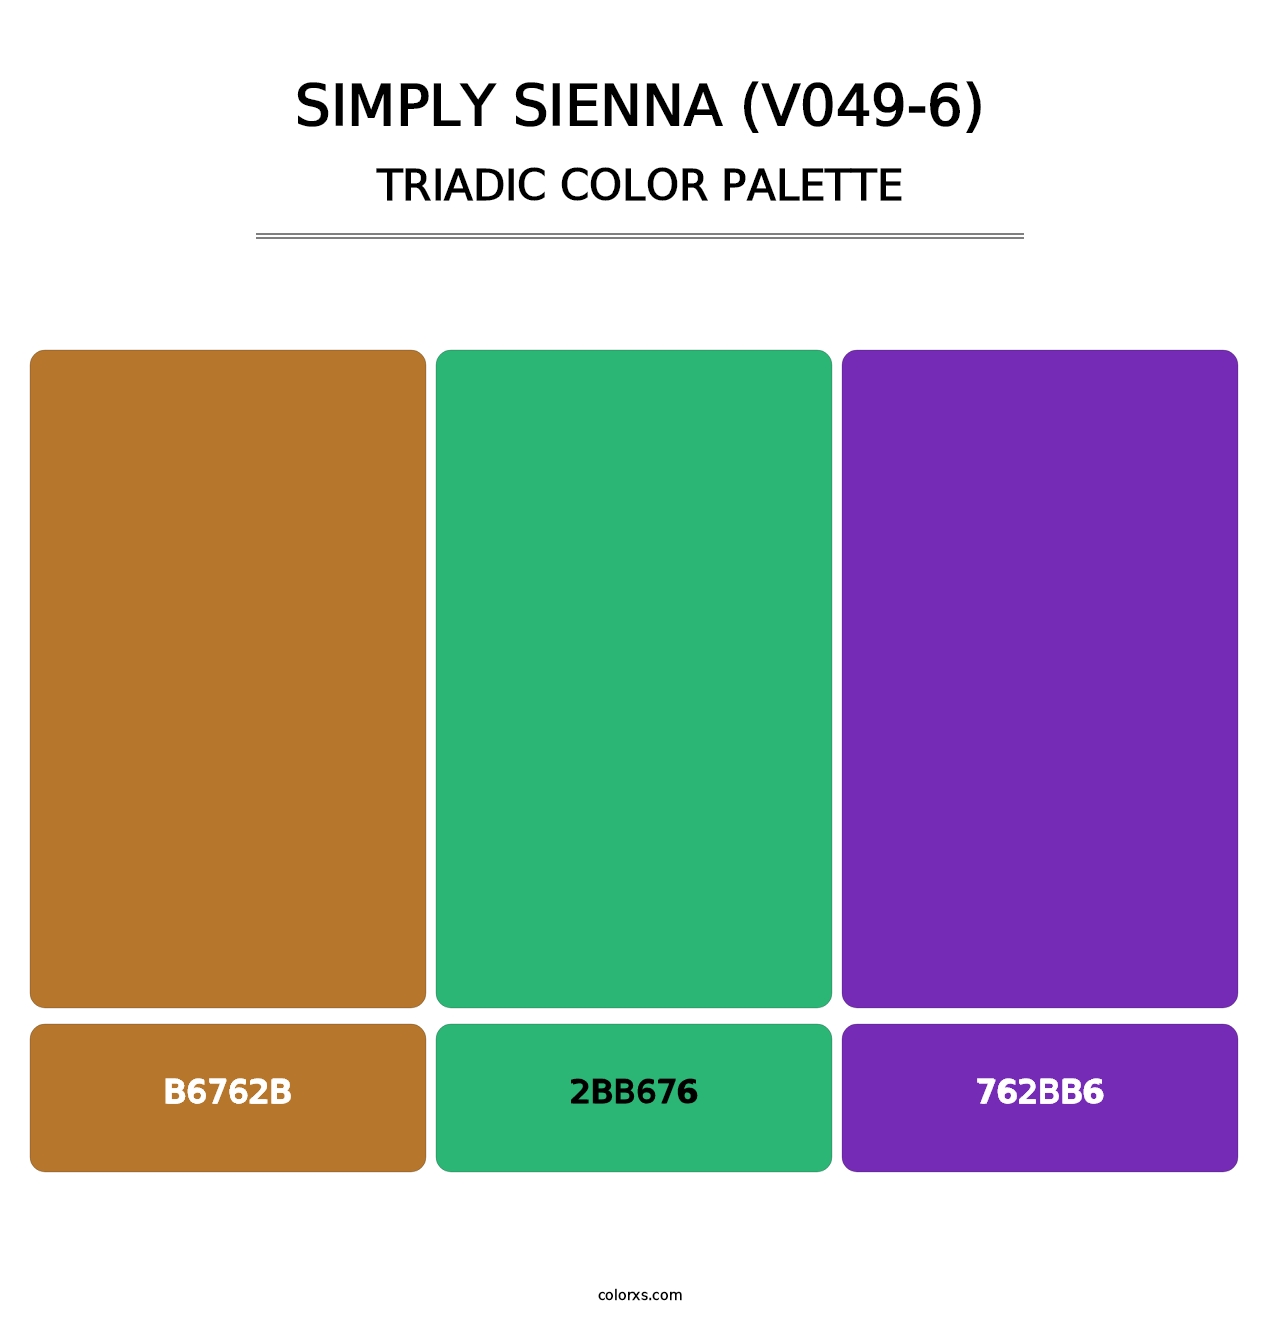 Simply Sienna (V049-6) - Triadic Color Palette